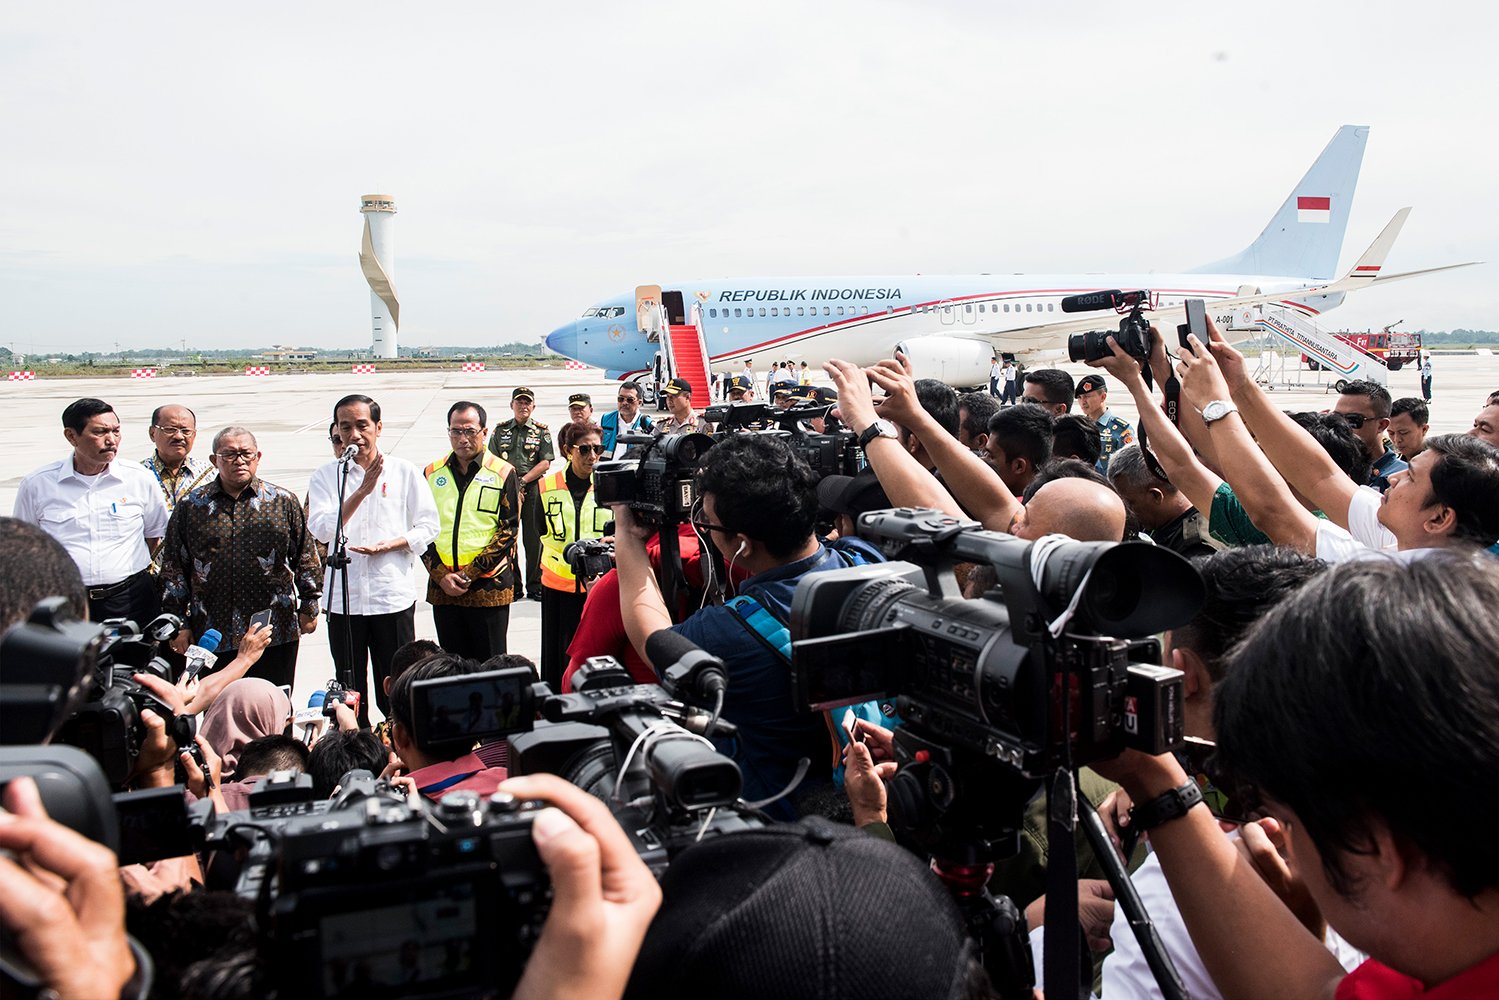 Presiden Joko Widodo (keempat kiri) memberikan keterangan kepada wartawan didampingi Menteri Perhubungan Budi Karya Sumadi (kelima kiri), Menteri Kelautan dan Perikanan Susi Pudjiastuti (keenam kiri), Menko Bidang Kearitiman Luhut Binsar Pandjaitan (kiri), dan Gubernur Jawa Barat Ahmad Heryawan (ketiga kiri) saat tiba di Bandara Internasional Jawa Barat (BIJB) Kertajati, Majalengka, Jawa Barat, Kamis (24/5). 